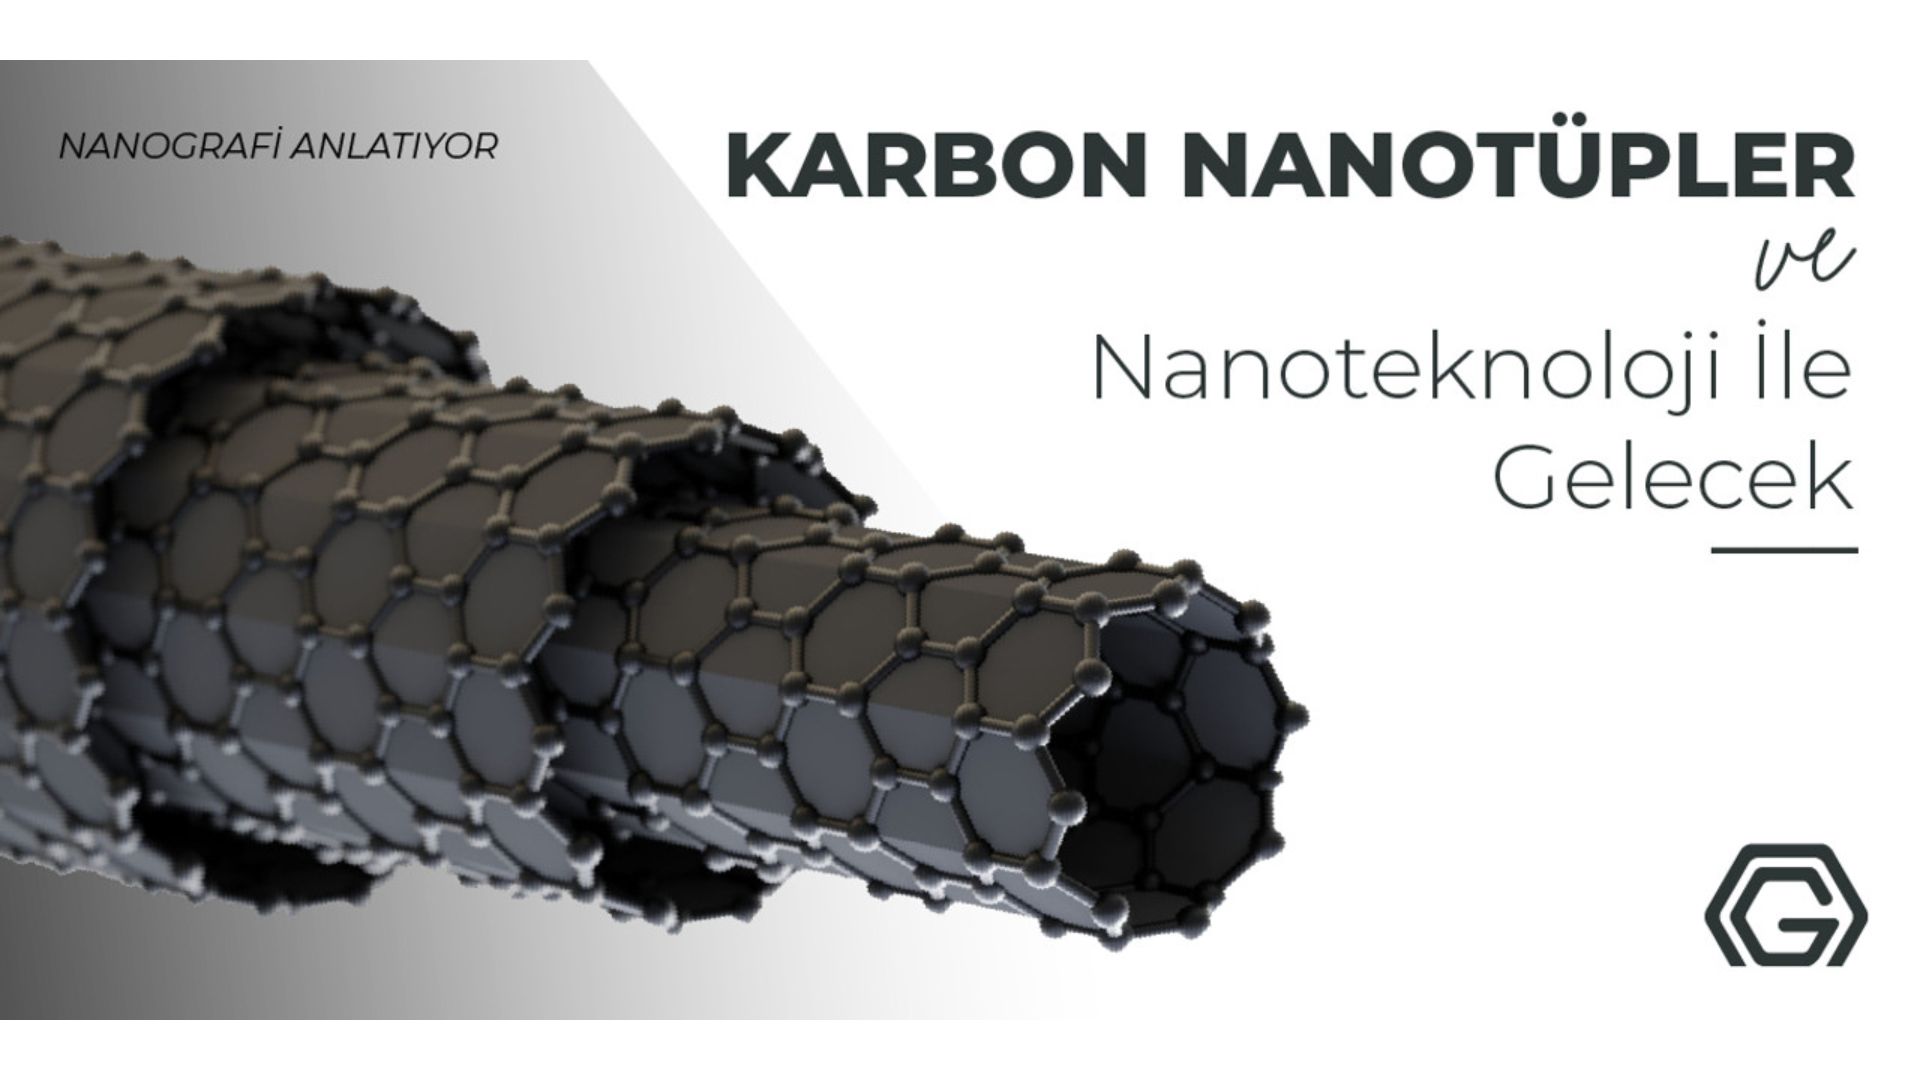 Karbon Nanotüpler için teklif alın.